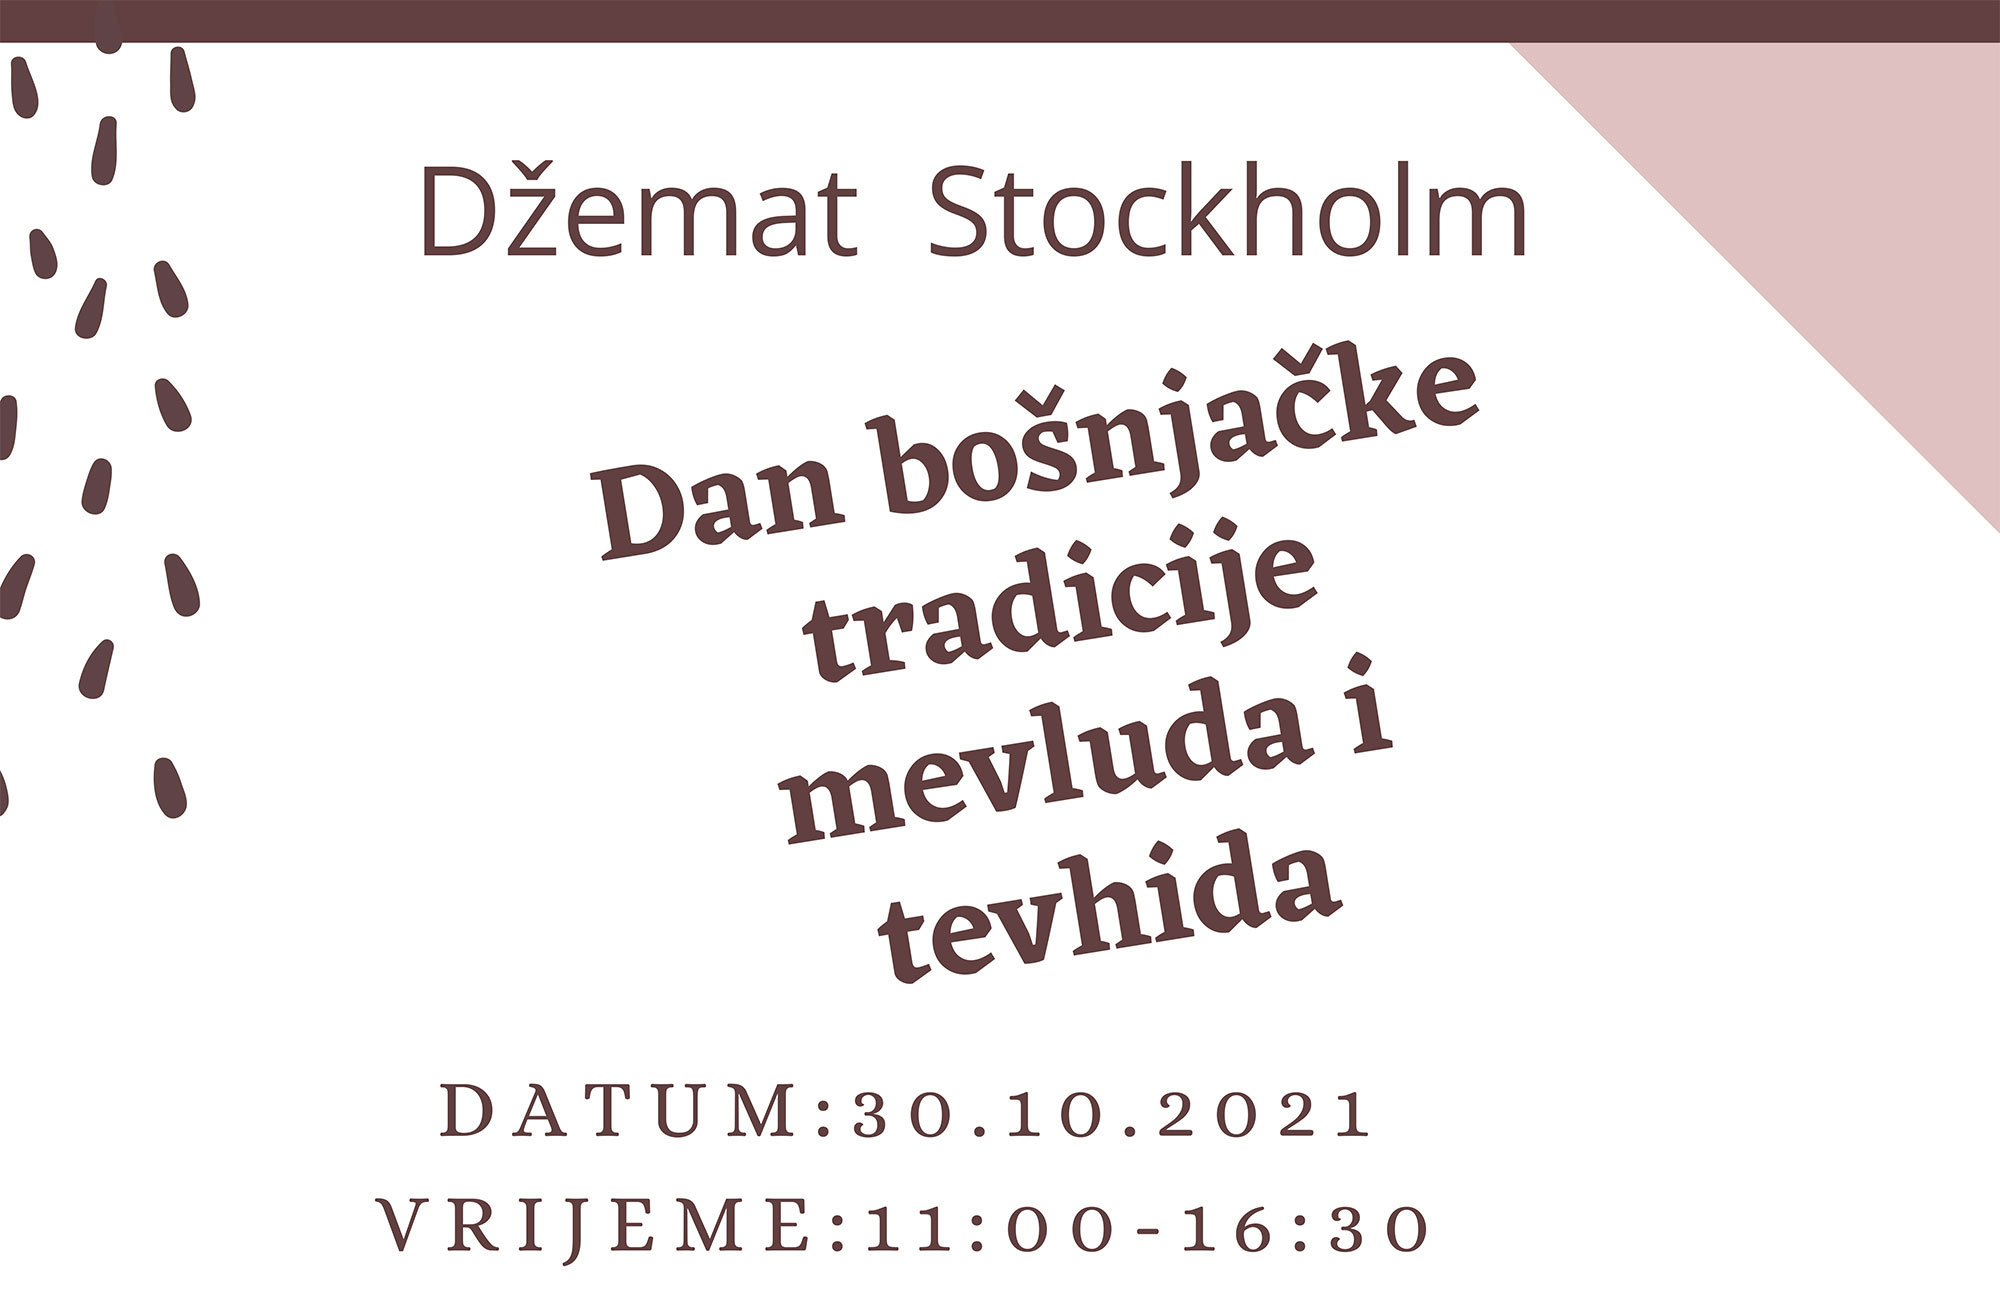 Dan bošnjačke tradicije mevluda i tevhida 30.10.2021. godine